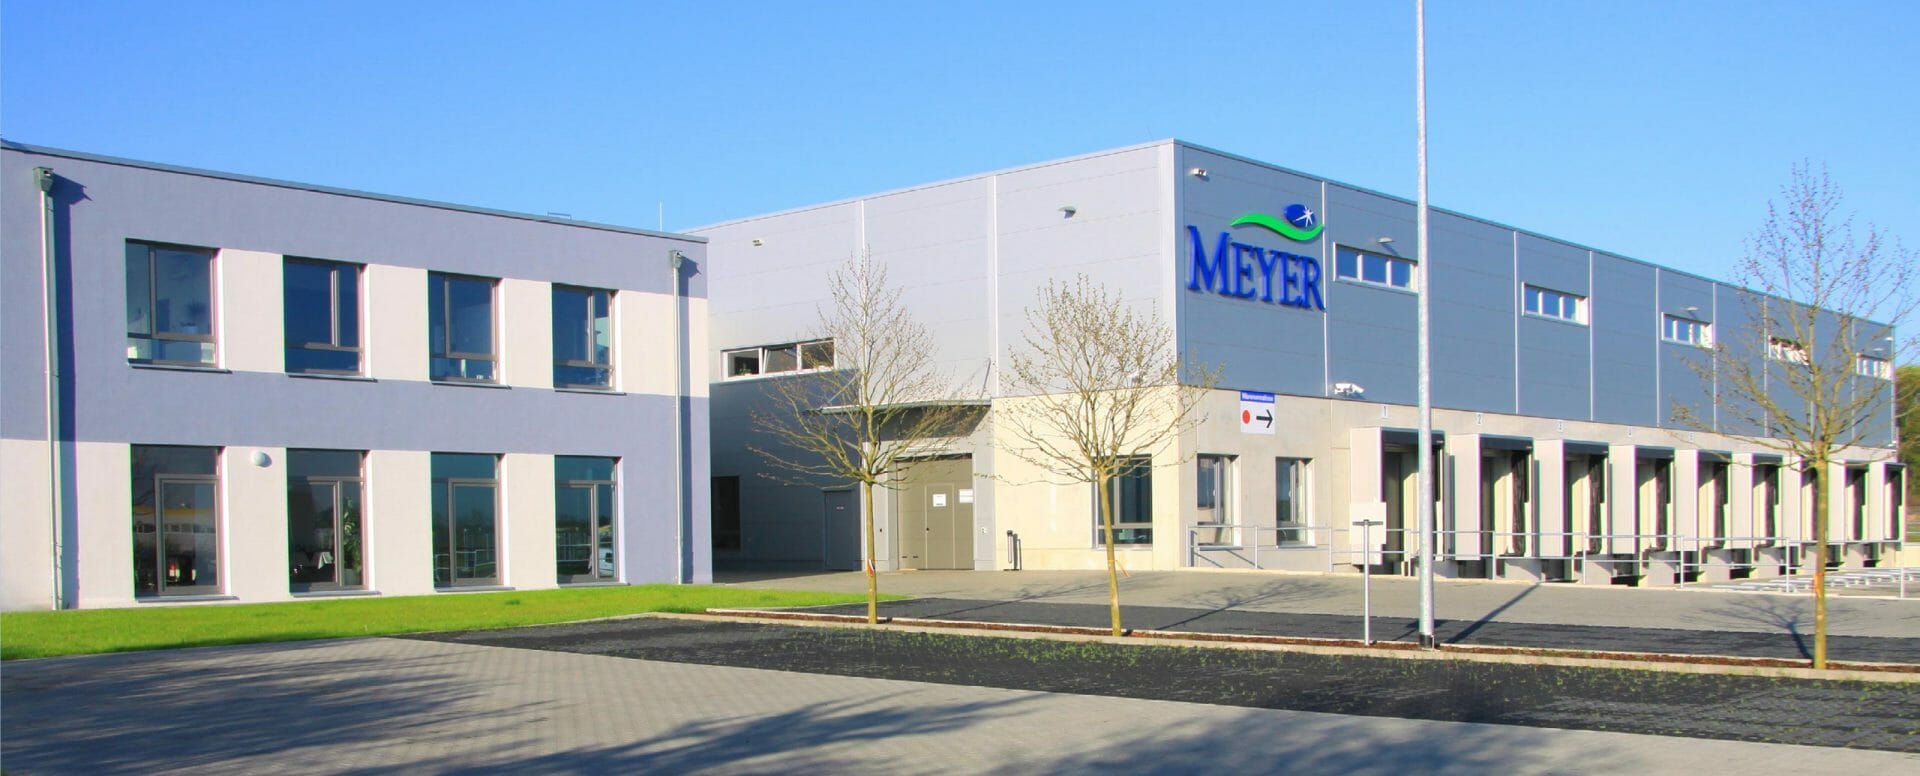 Firmengebäude der Johann A. Meyer GmbH in Wildau